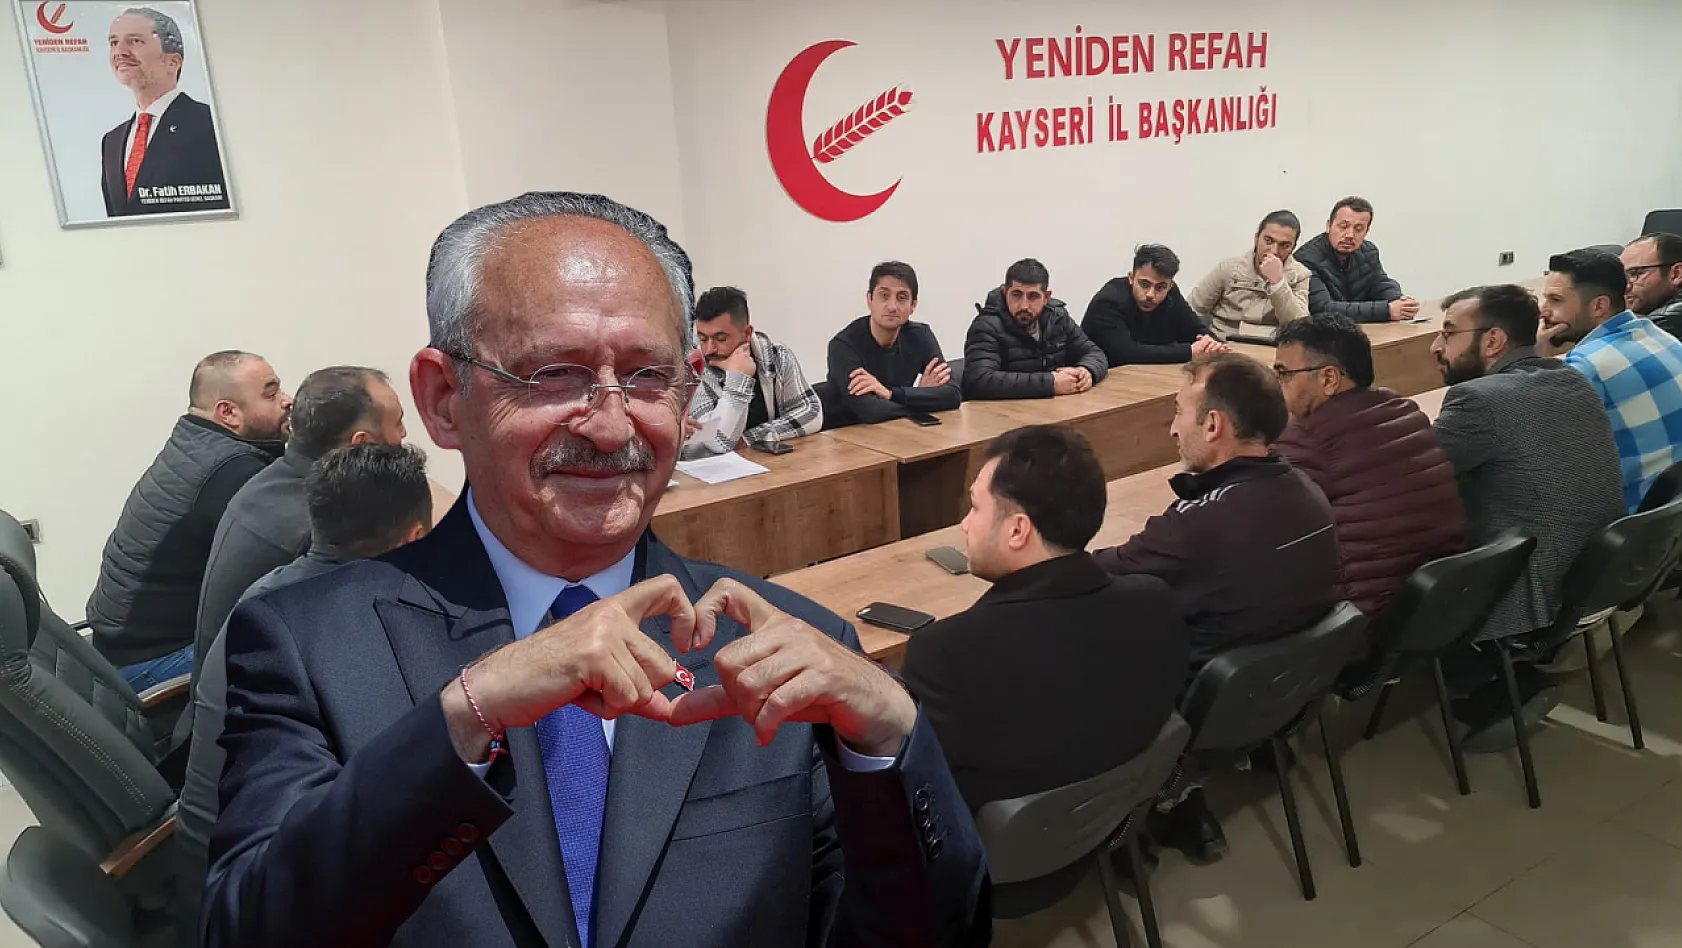 Yeniden Refah Partisi, Kılıçdaroğlu'nun 'unutulan' sloganını kaptı!